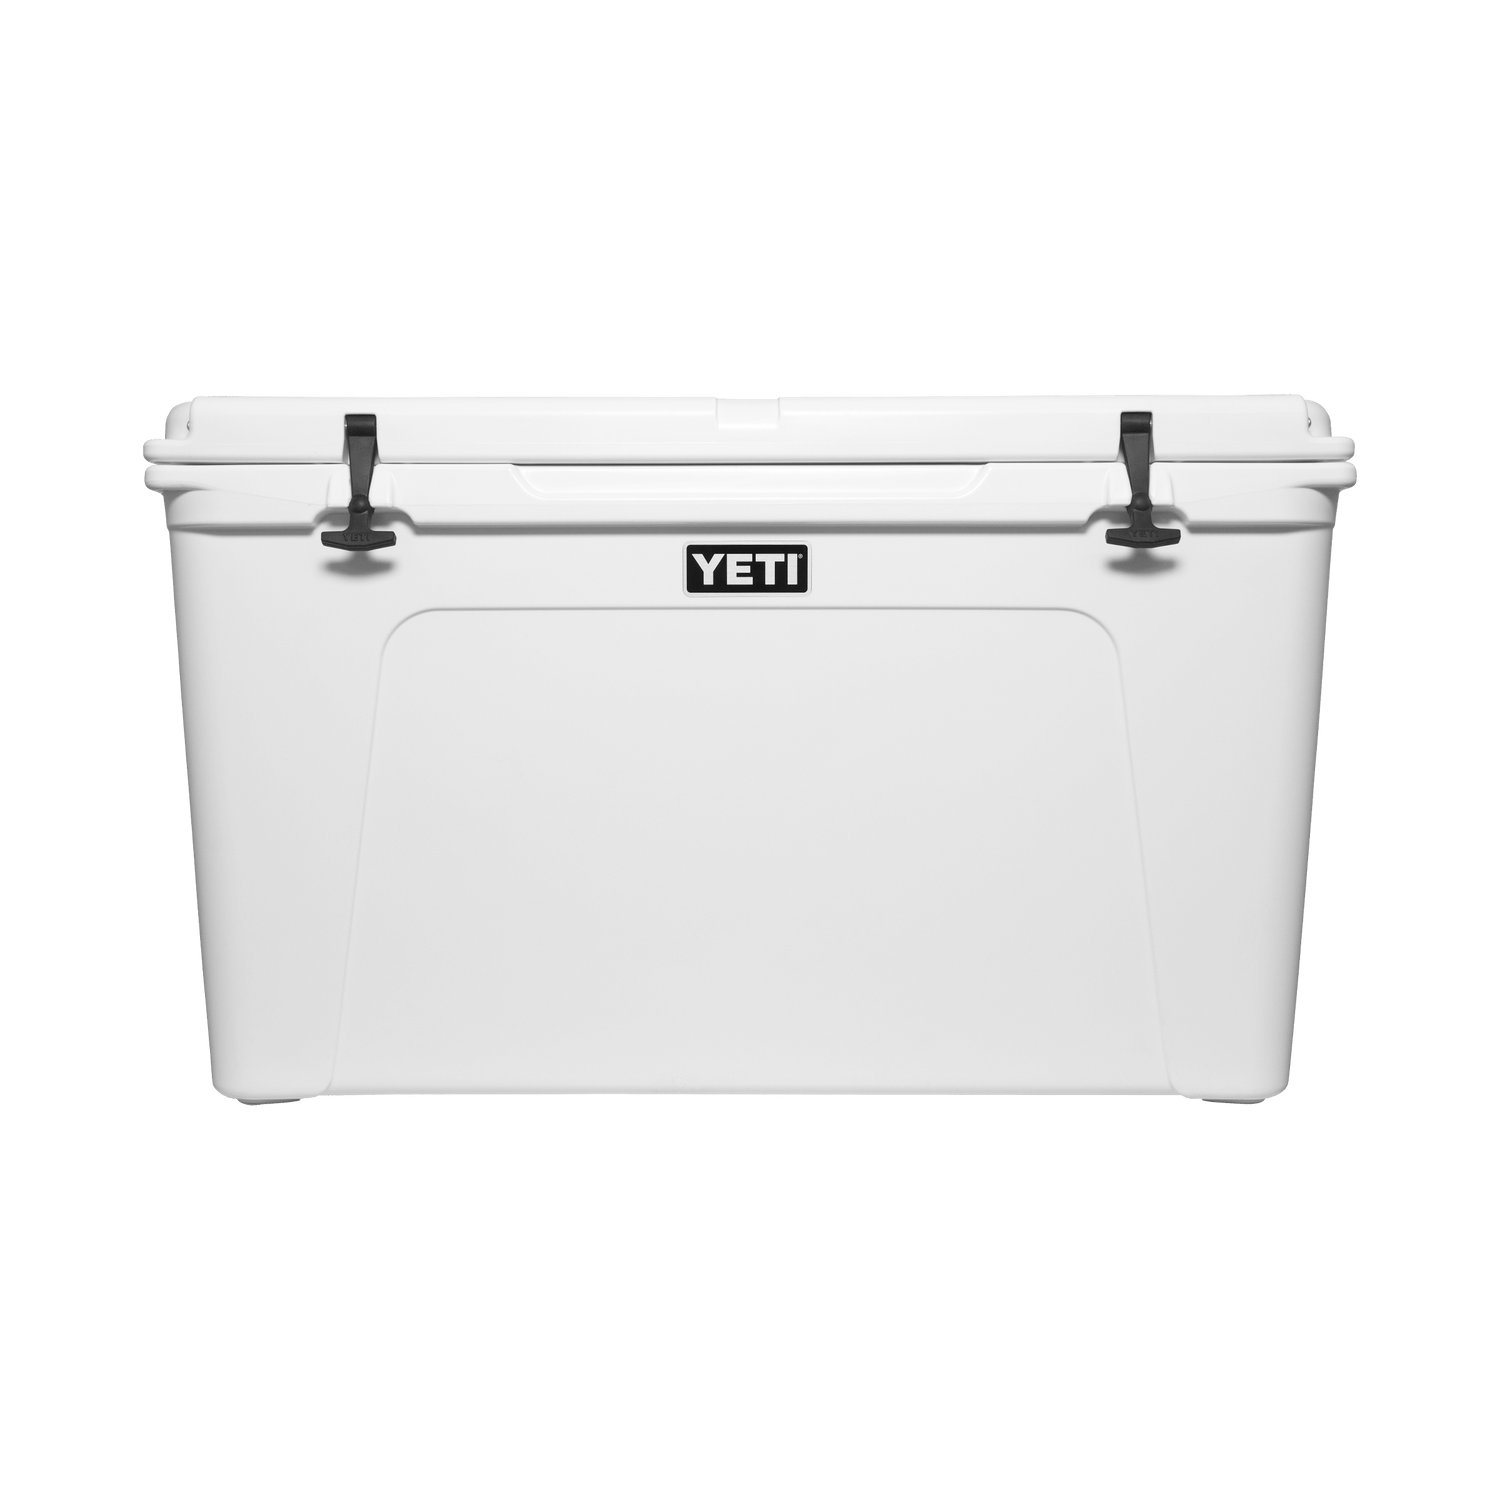 Yeti Tundra 35 Cooler Box - White - BRAND NEW IN BOX - Local Pick